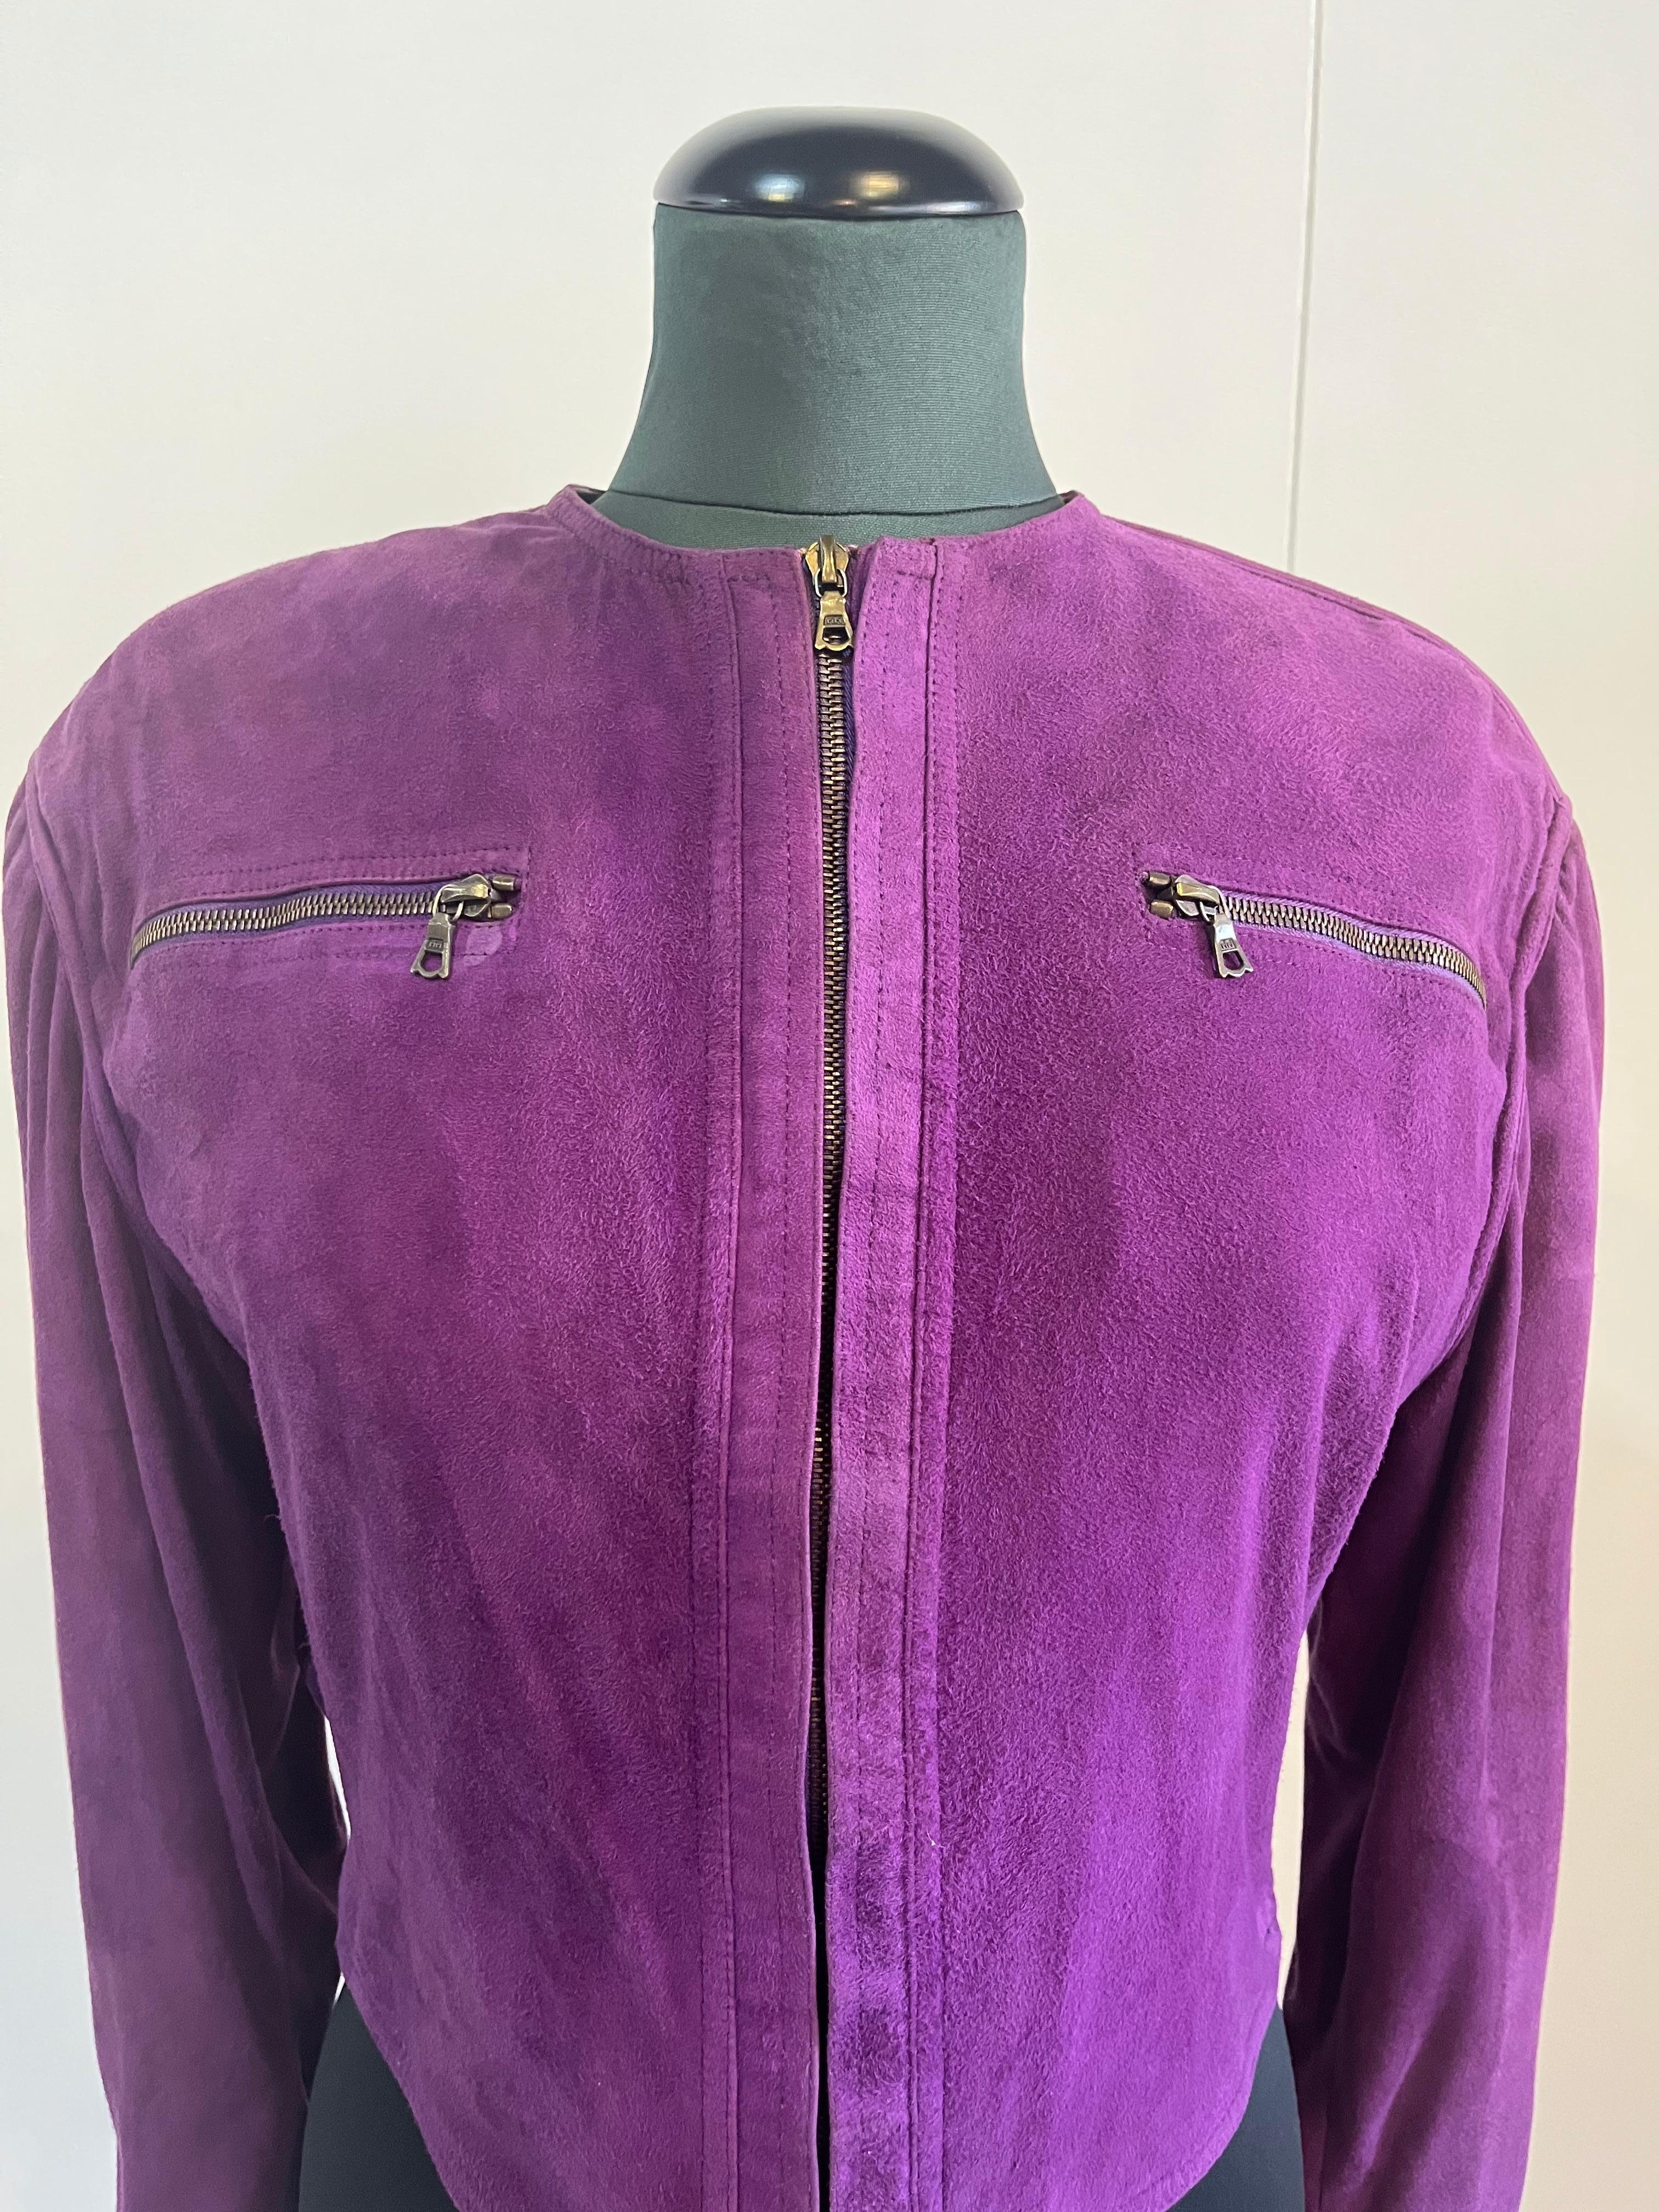 Veste en daim violet des années 80 de Gianni Versace. Épaules rembourrées et fermeture à glissière. La veste a été recolorée dans les pressings mais présente encore quelques signes d'utilisation au fil du temps. La taille n'est pas indiquée.
Épaules